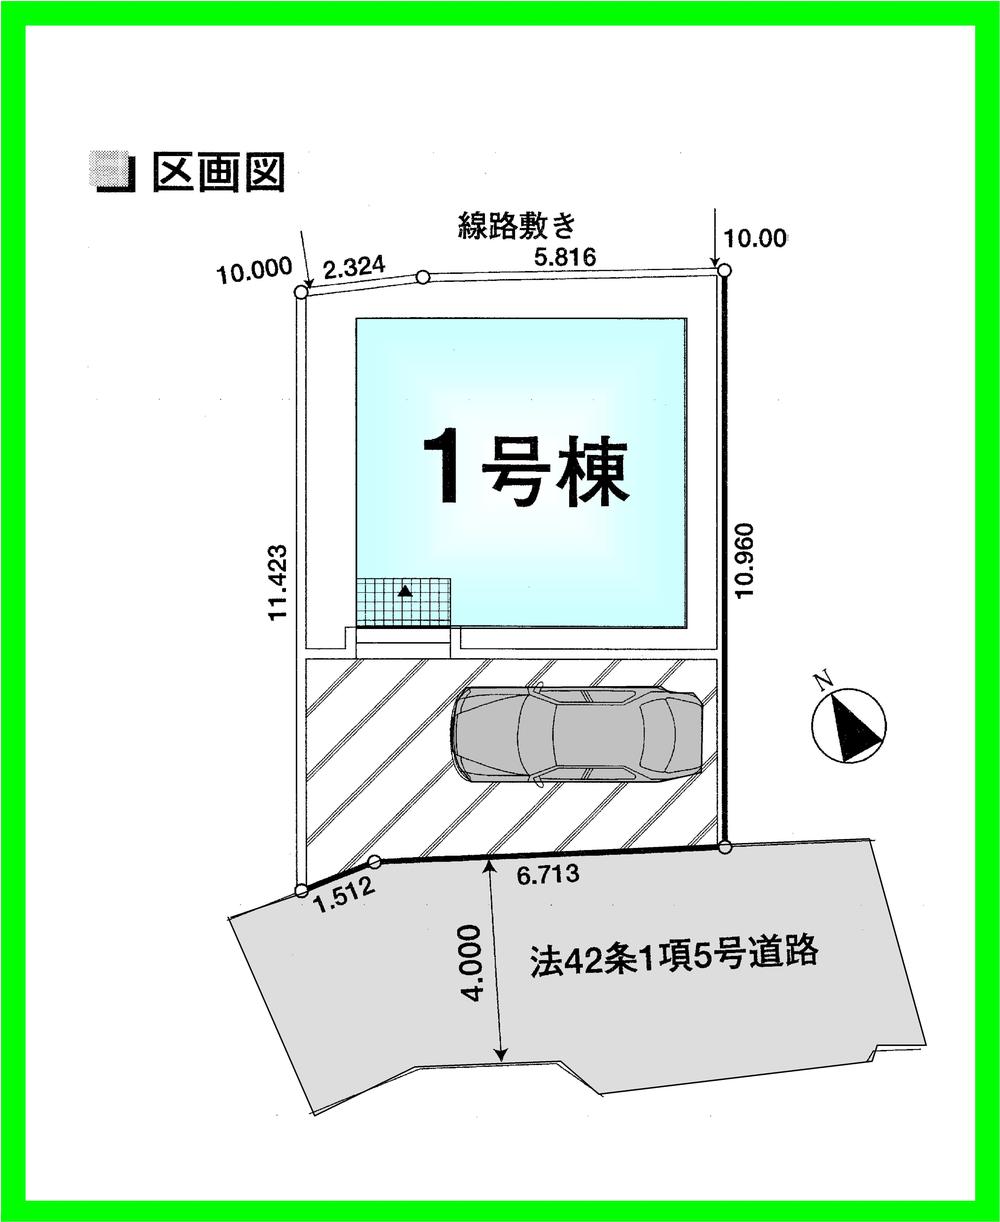 Compartment figure. 32,800,000 yen, 3LDK, Land area 89.73 sq m , Building area 70.46 sq m